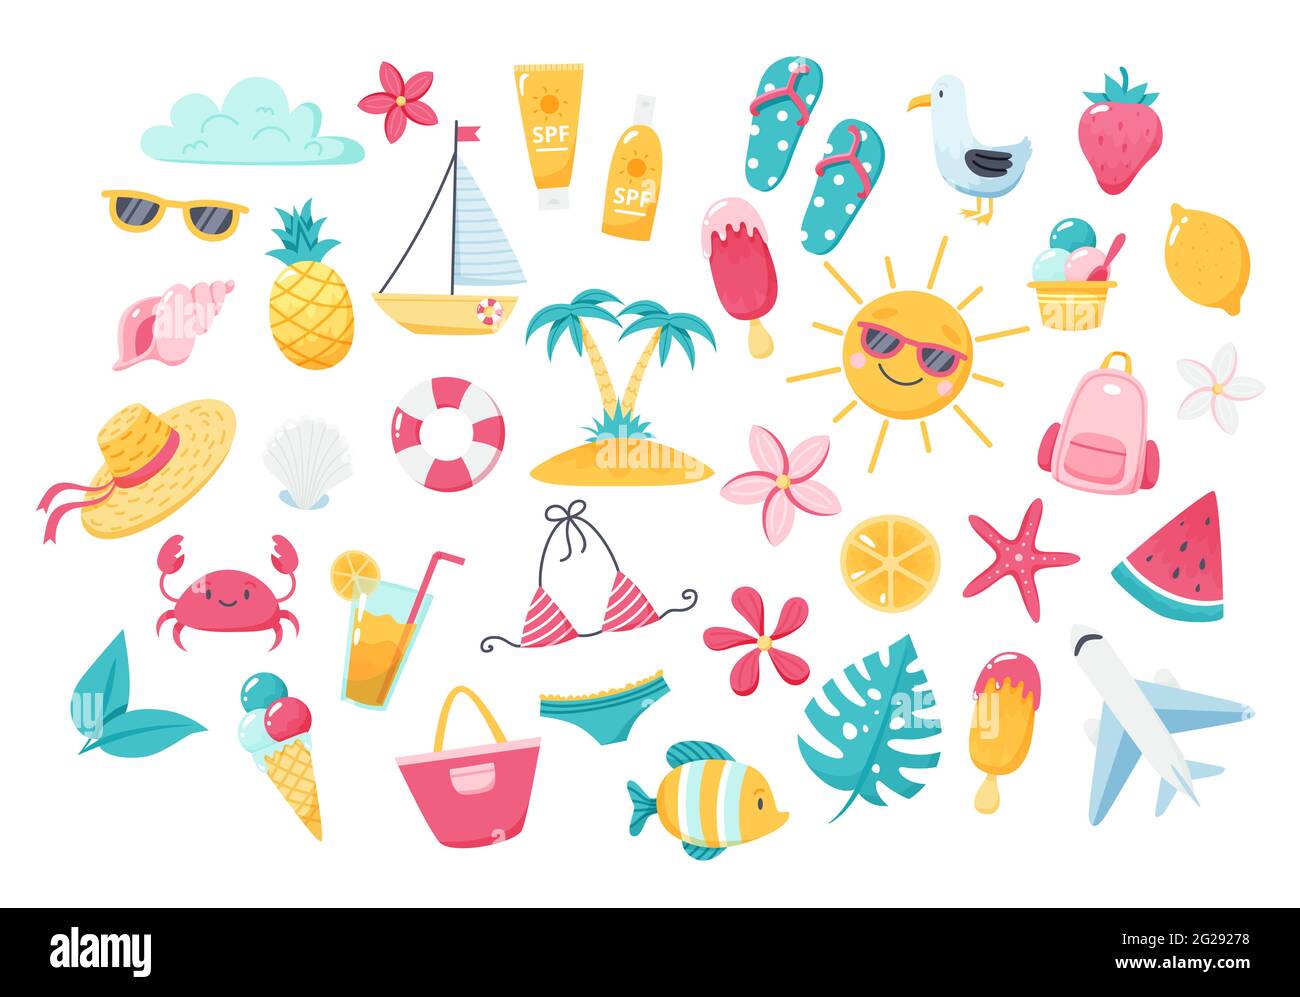 Sommer-Set mit niedlichen Strandelementen: Bikini, Flip Flops, Obst, Blumen, Palmen. Handgezeichnete flache Cartoon-Elemente. Vektorgrafik Stock Vektor